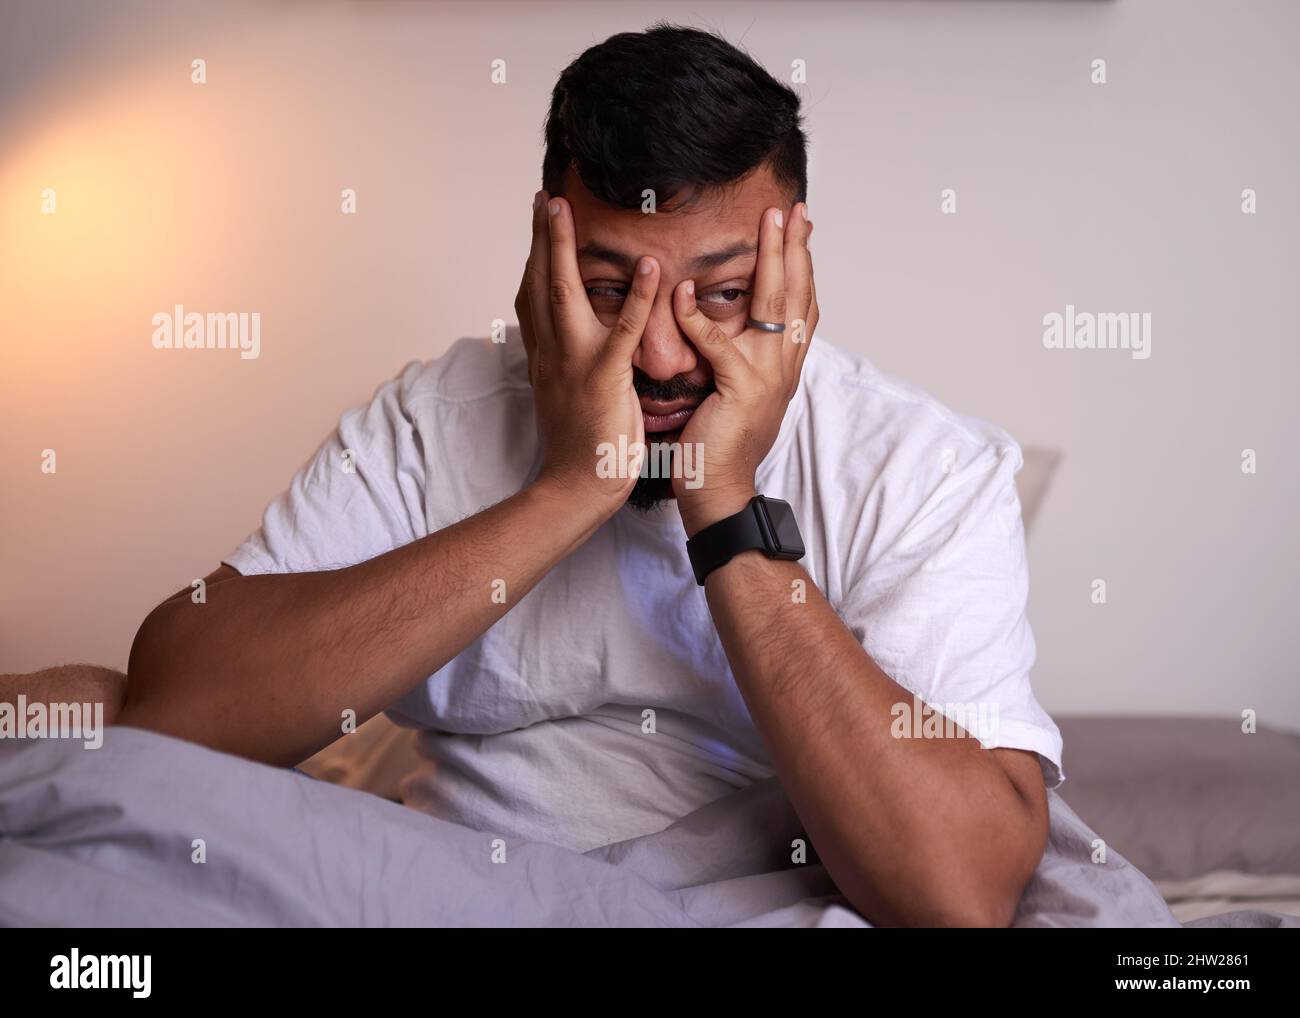 Un homme adulte couvre son visage luttant pour se réveiller tôt le matin Banque D'Images